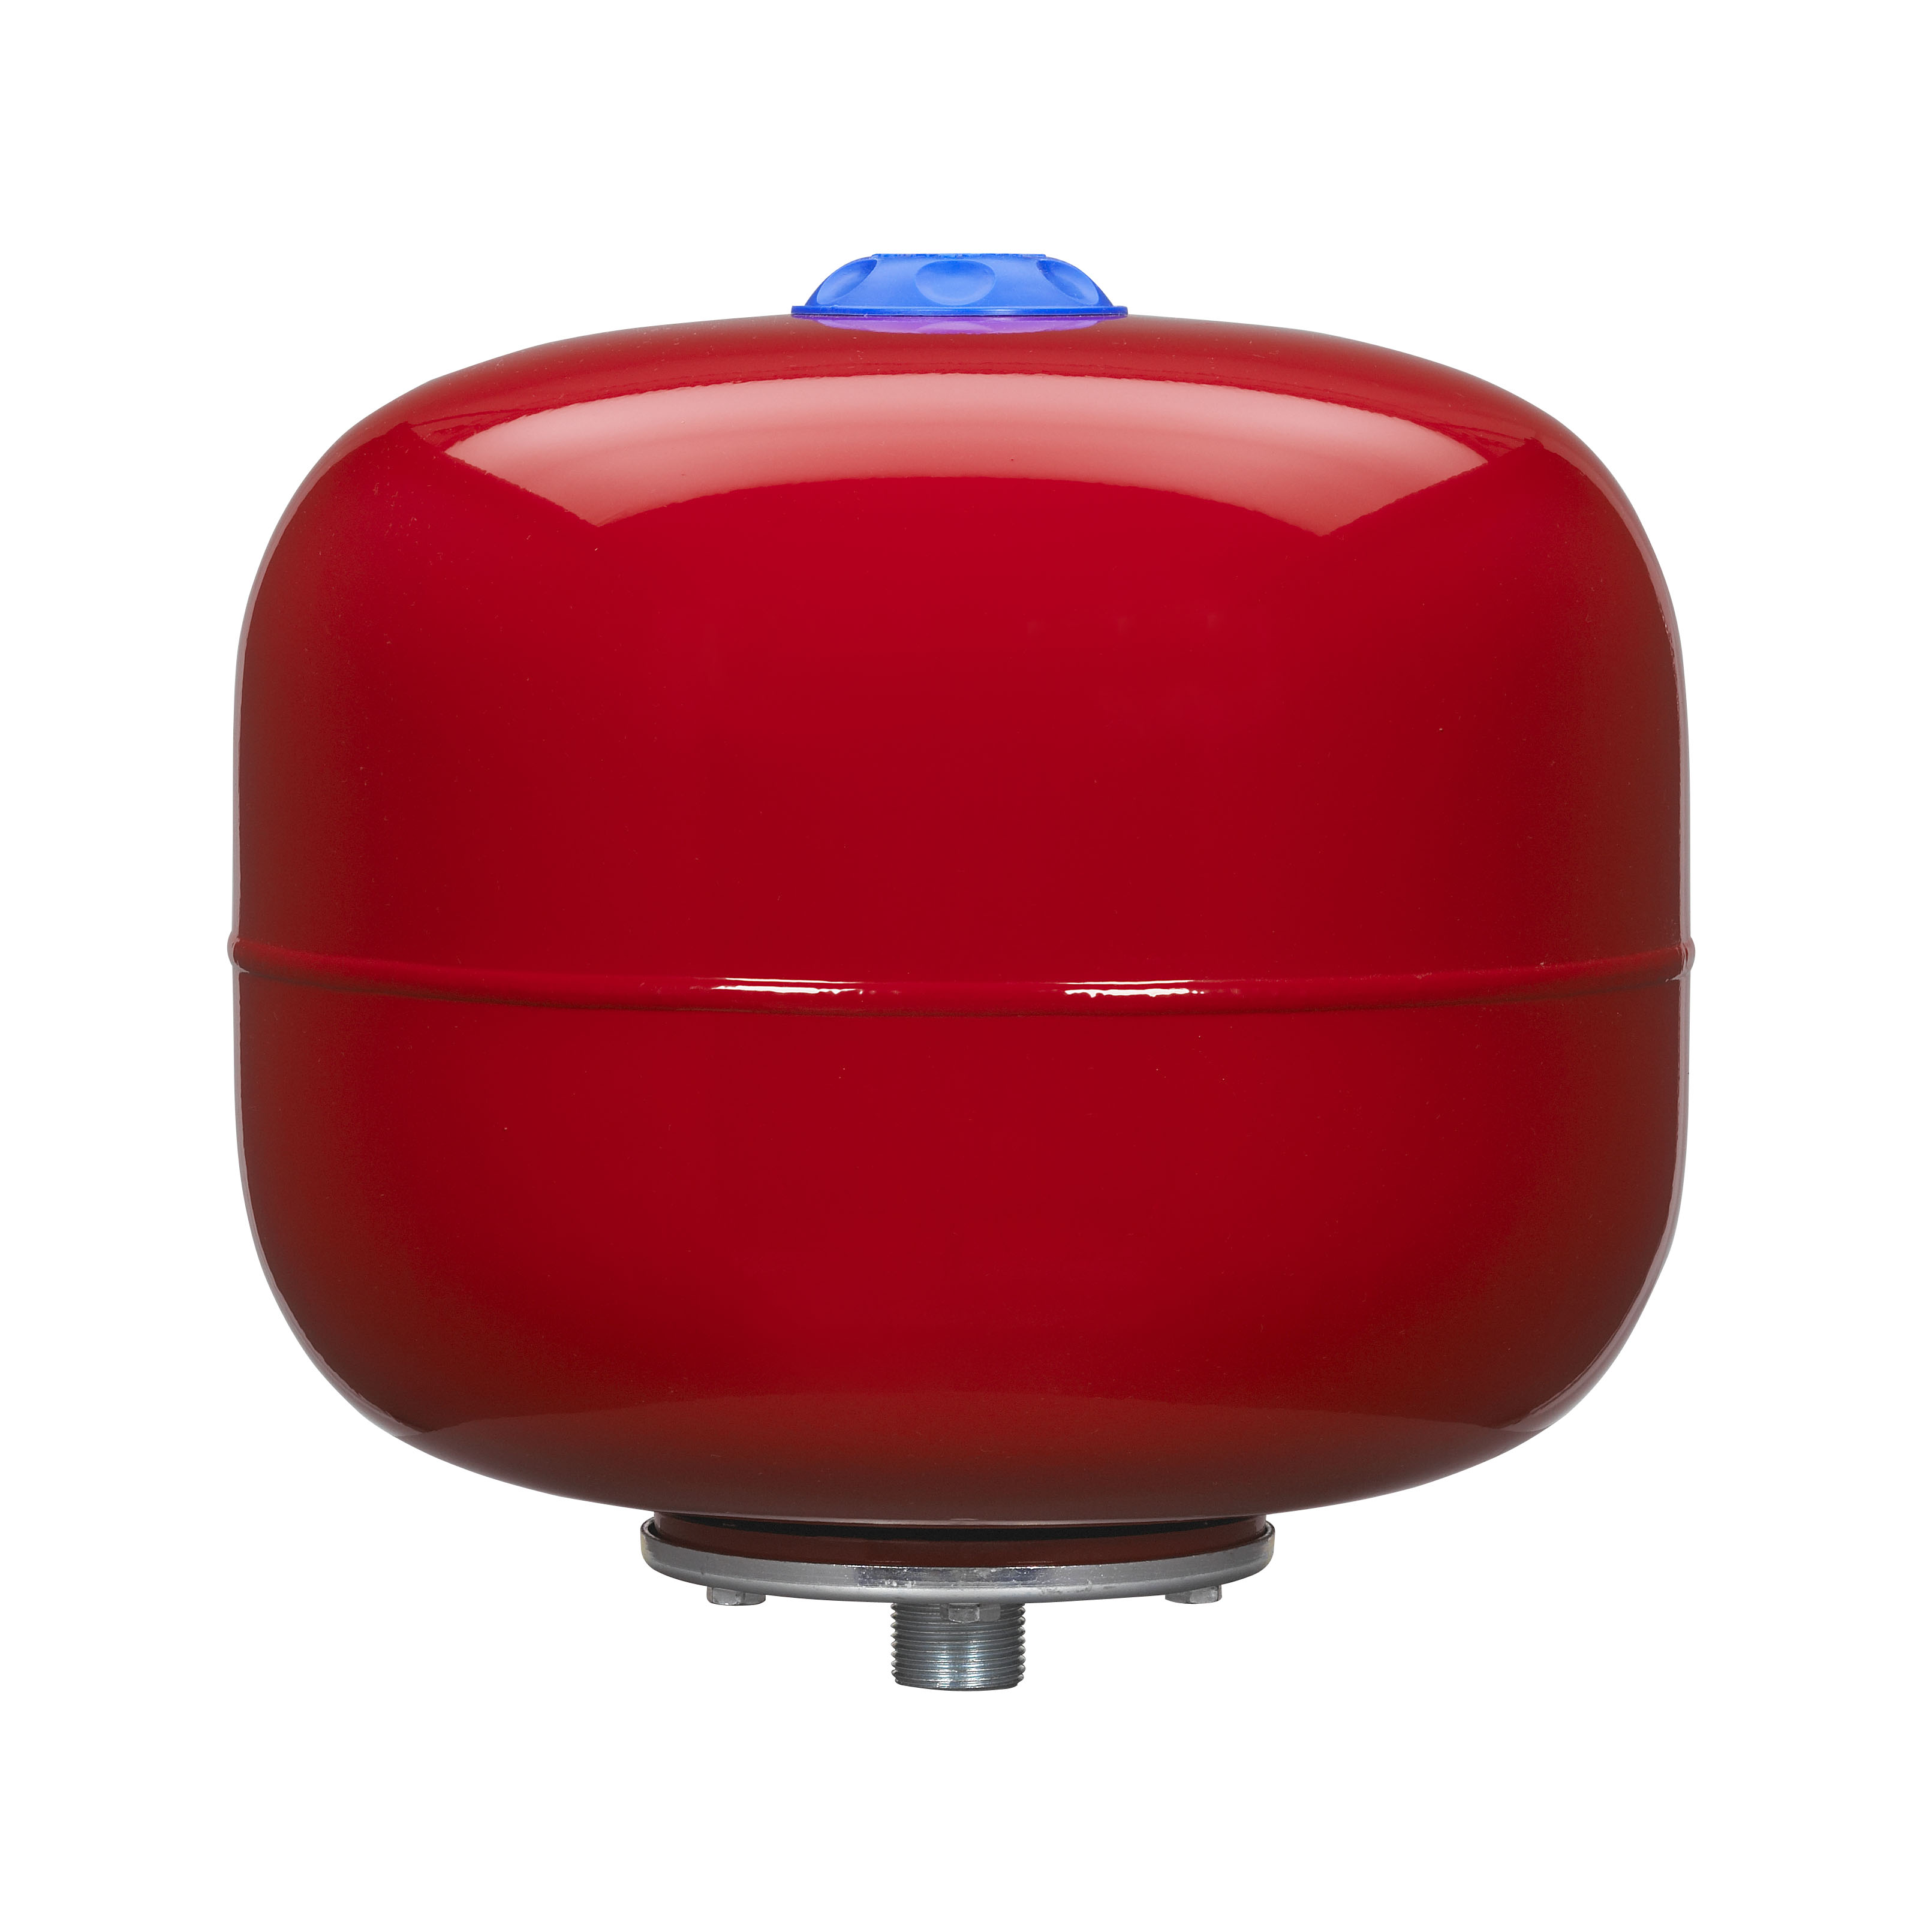 24L Druckkessel Druckbehälter Membrankessel Hauswasserwerk Pumpe